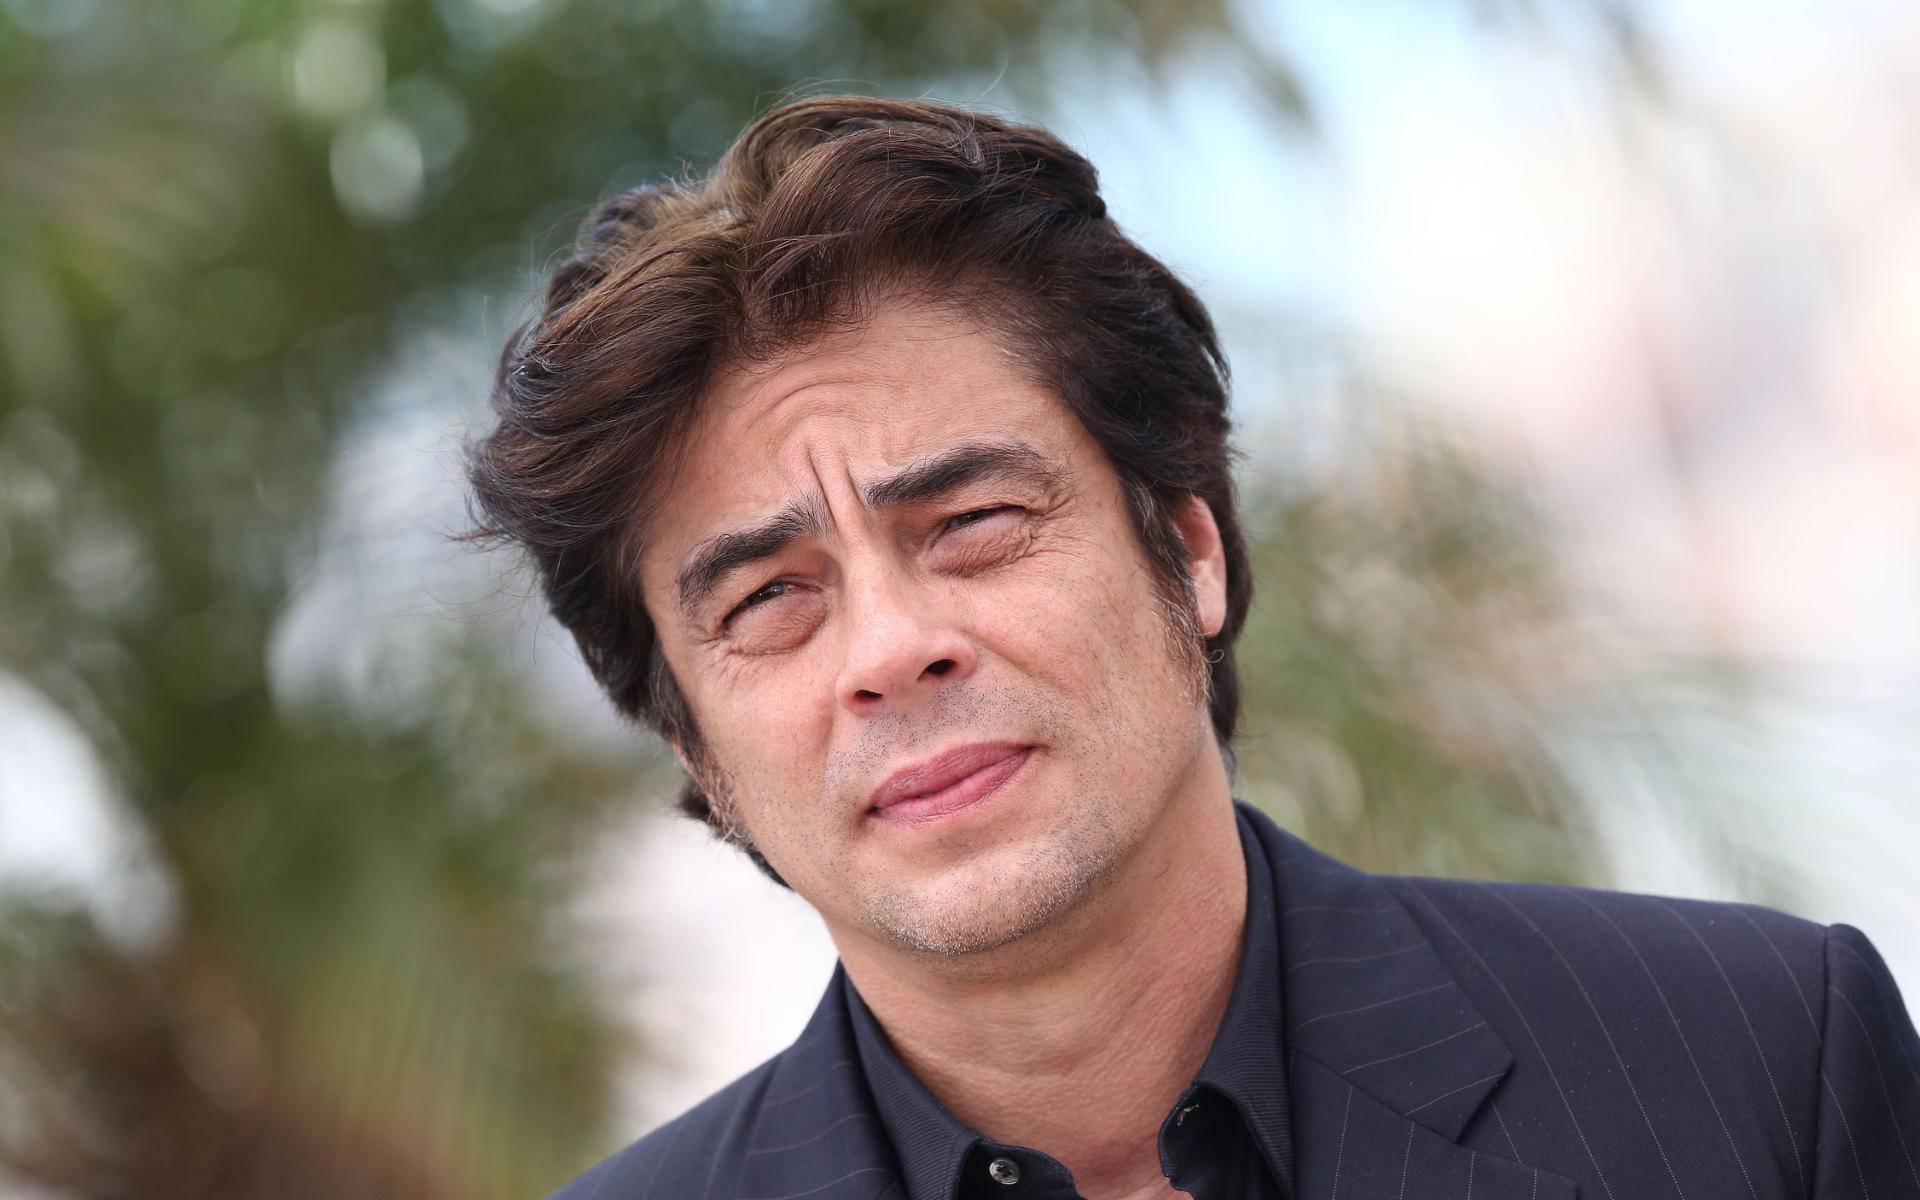 Benicio del toro shirtless